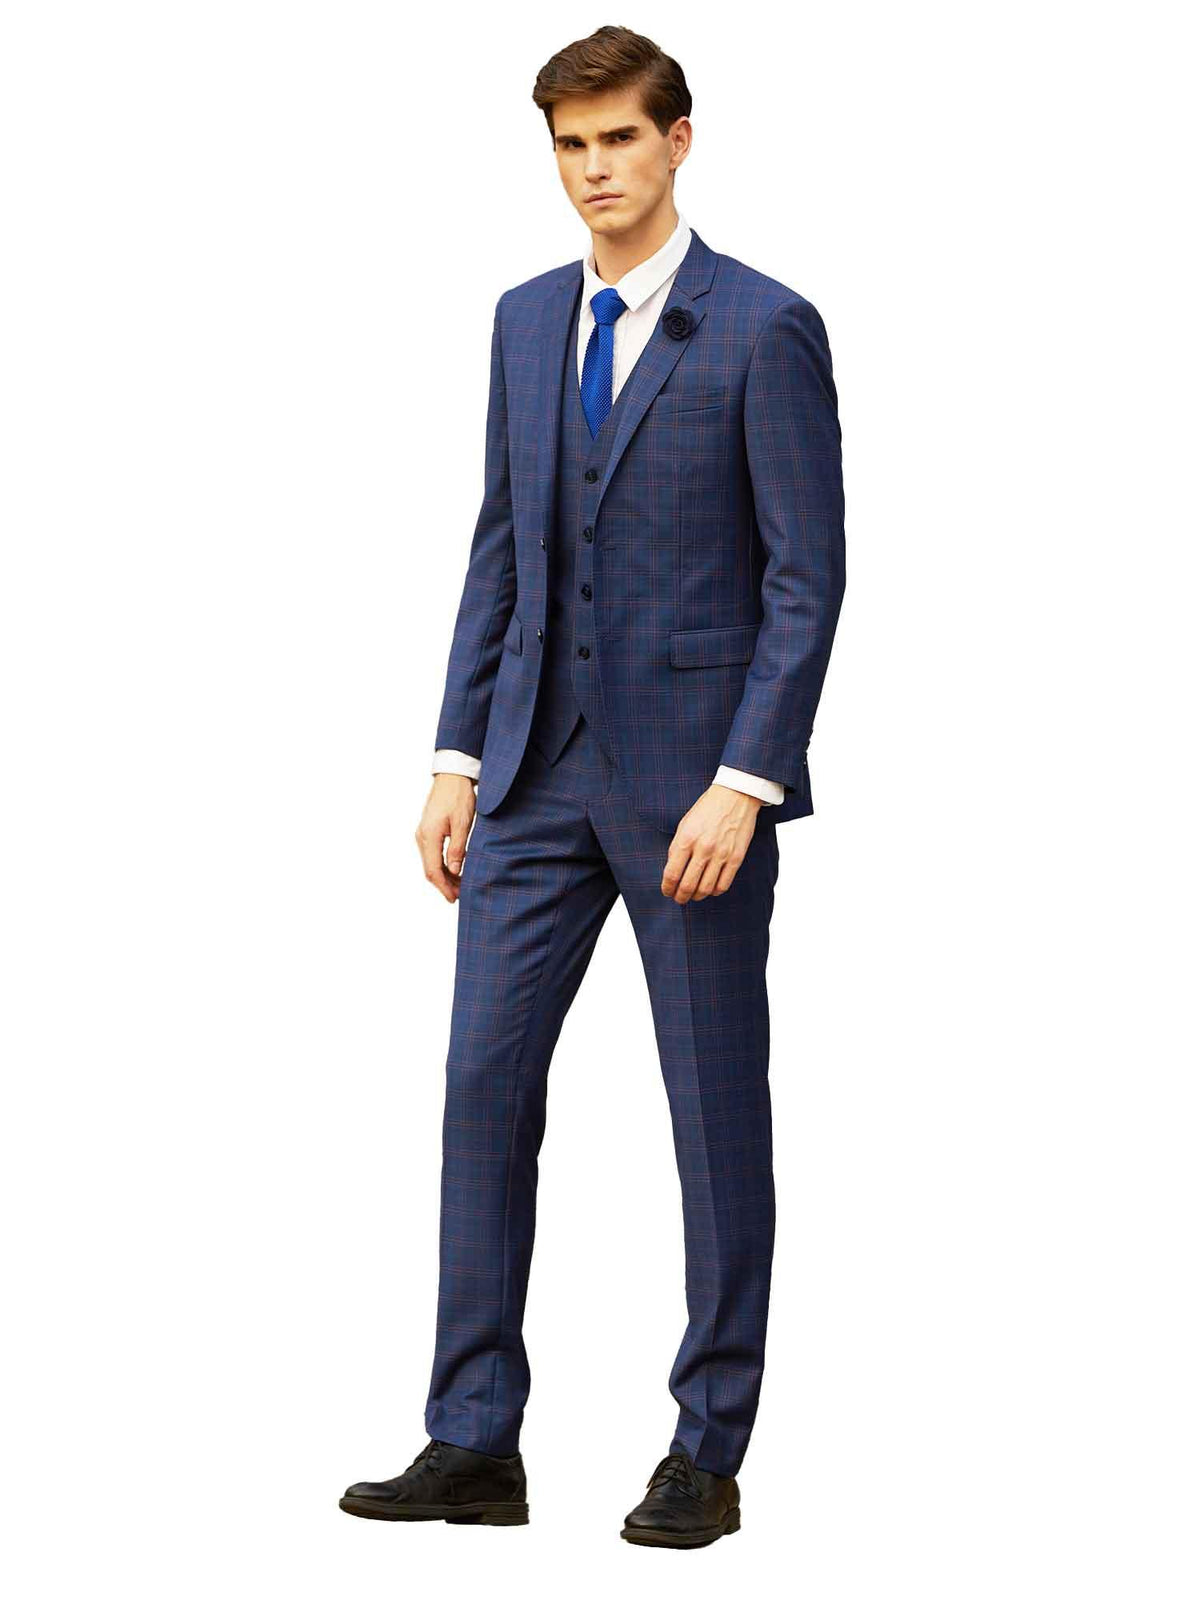 FW-5 Azure Abram Suit Jacket - Harrys for Menswear